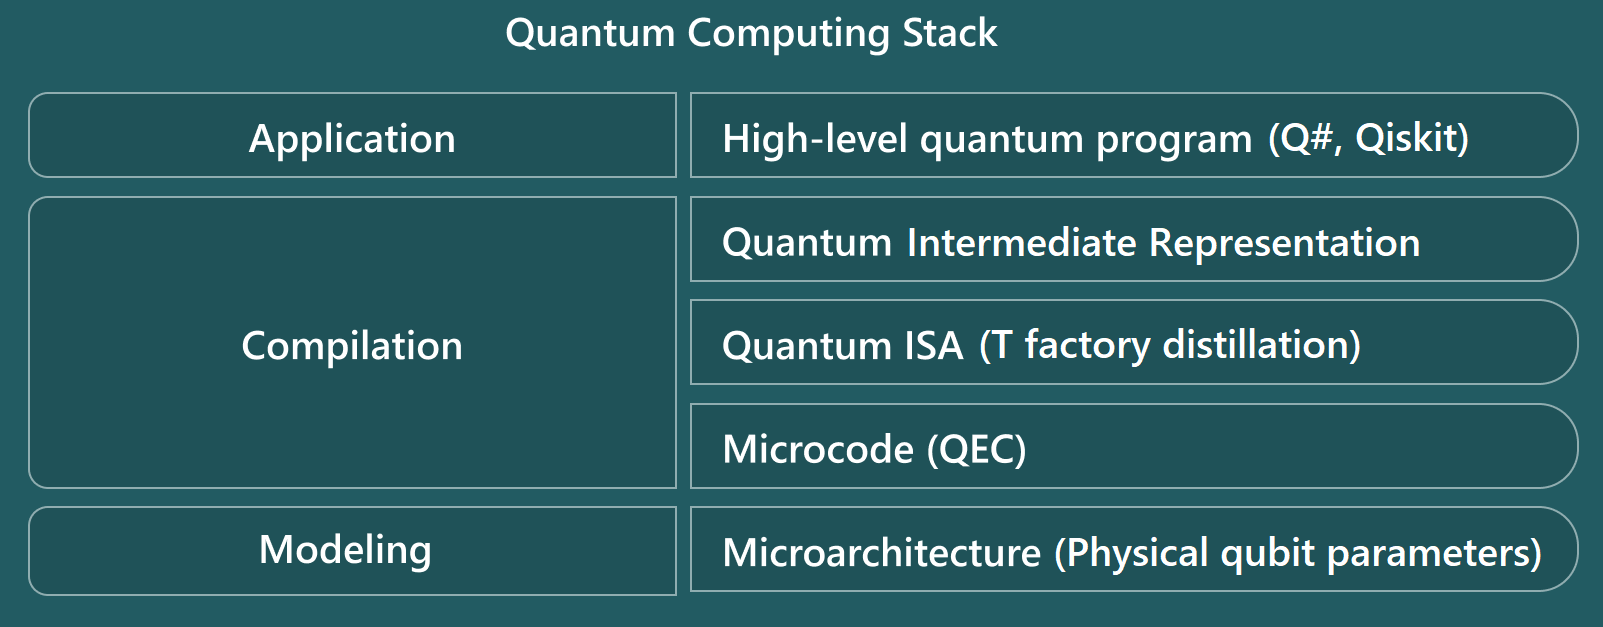 显示资源估算器的量子计算堆栈级别的示意图。